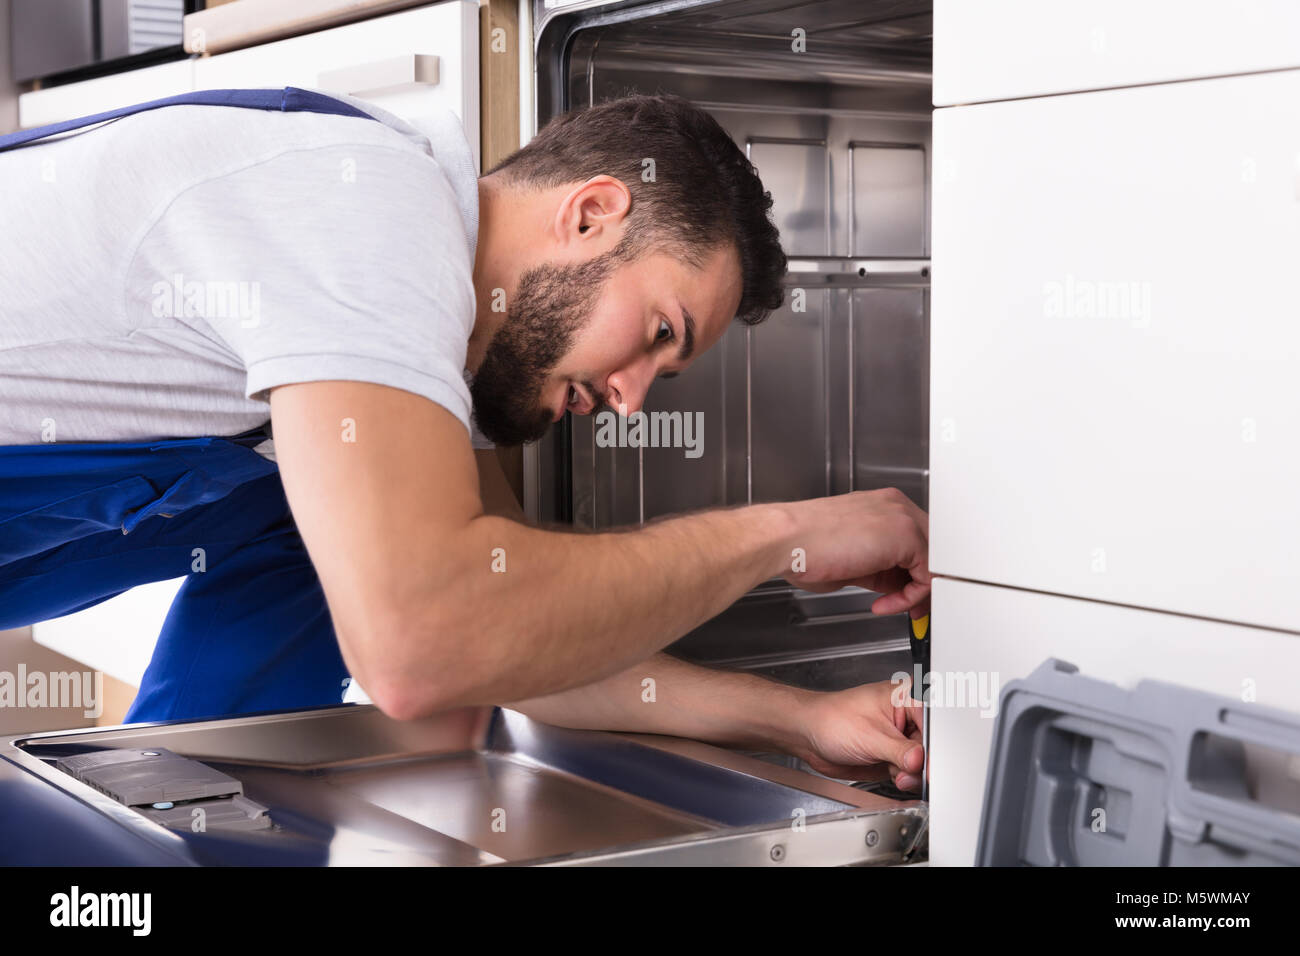 Technicien de jeunes hommes de la réparation d'un lave-vaisselle dans la cuisine Banque D'Images